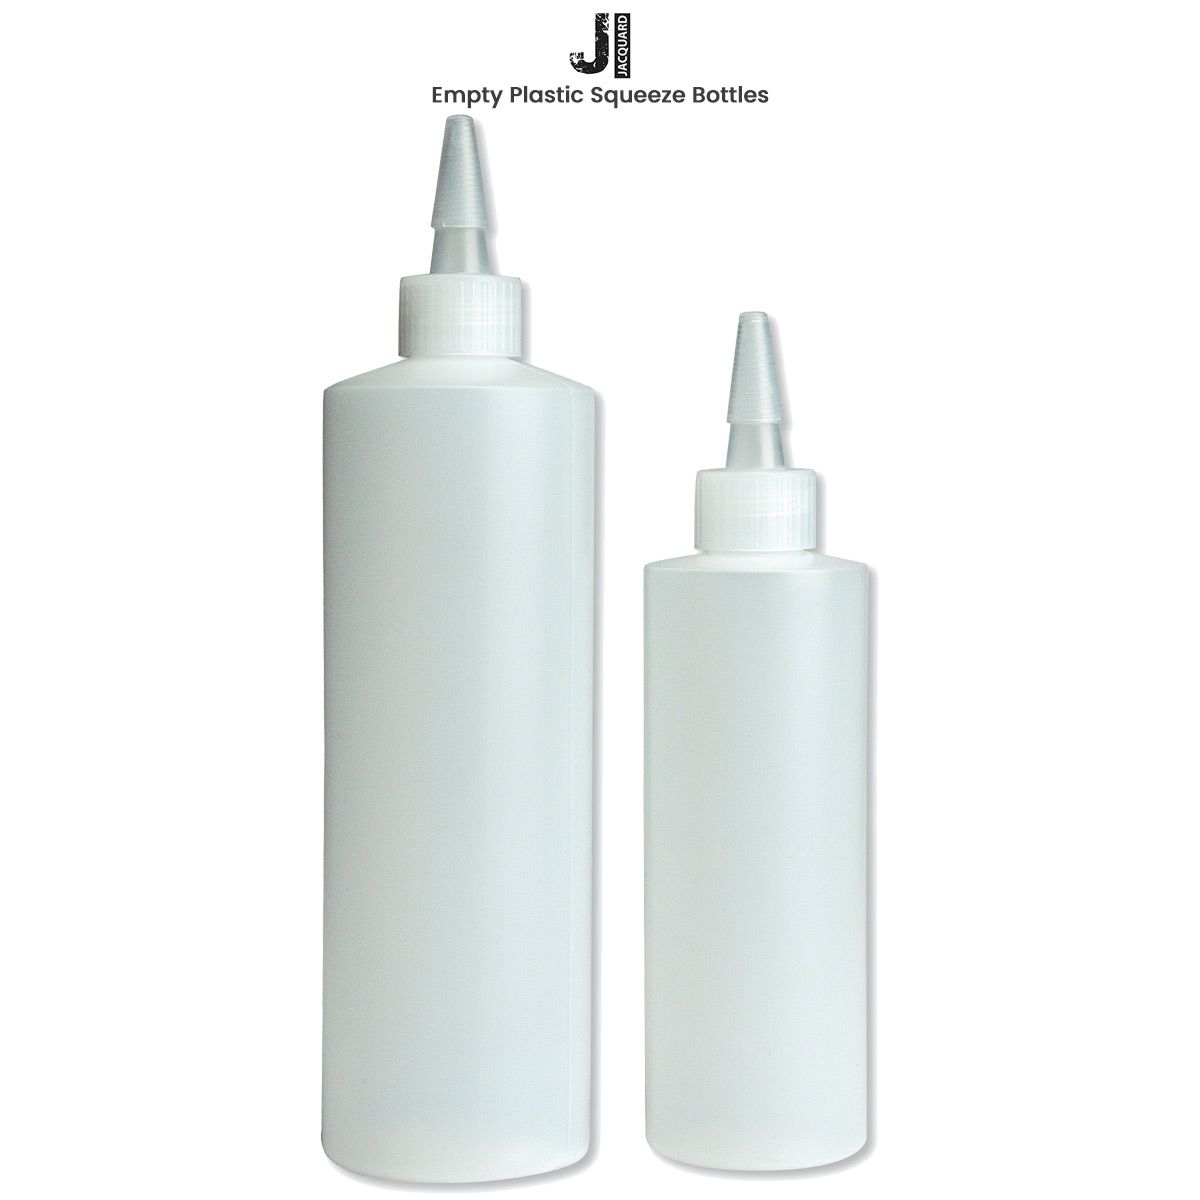 Jacquard - Plastic Squeeze Bottle - 8 oz.